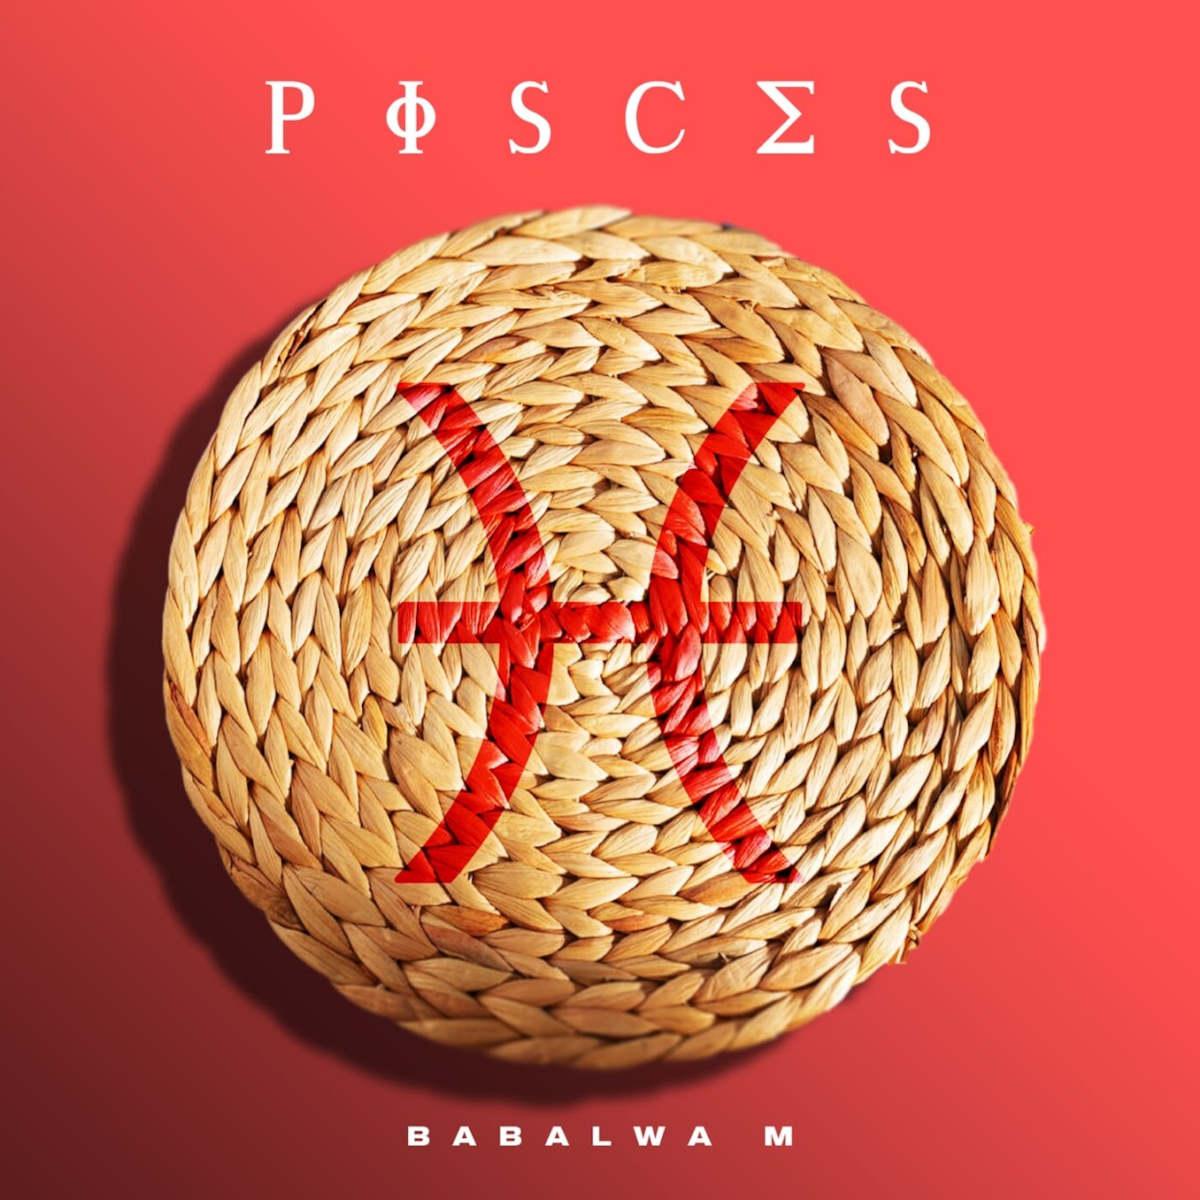 Babalwa M - Pisces (Album)